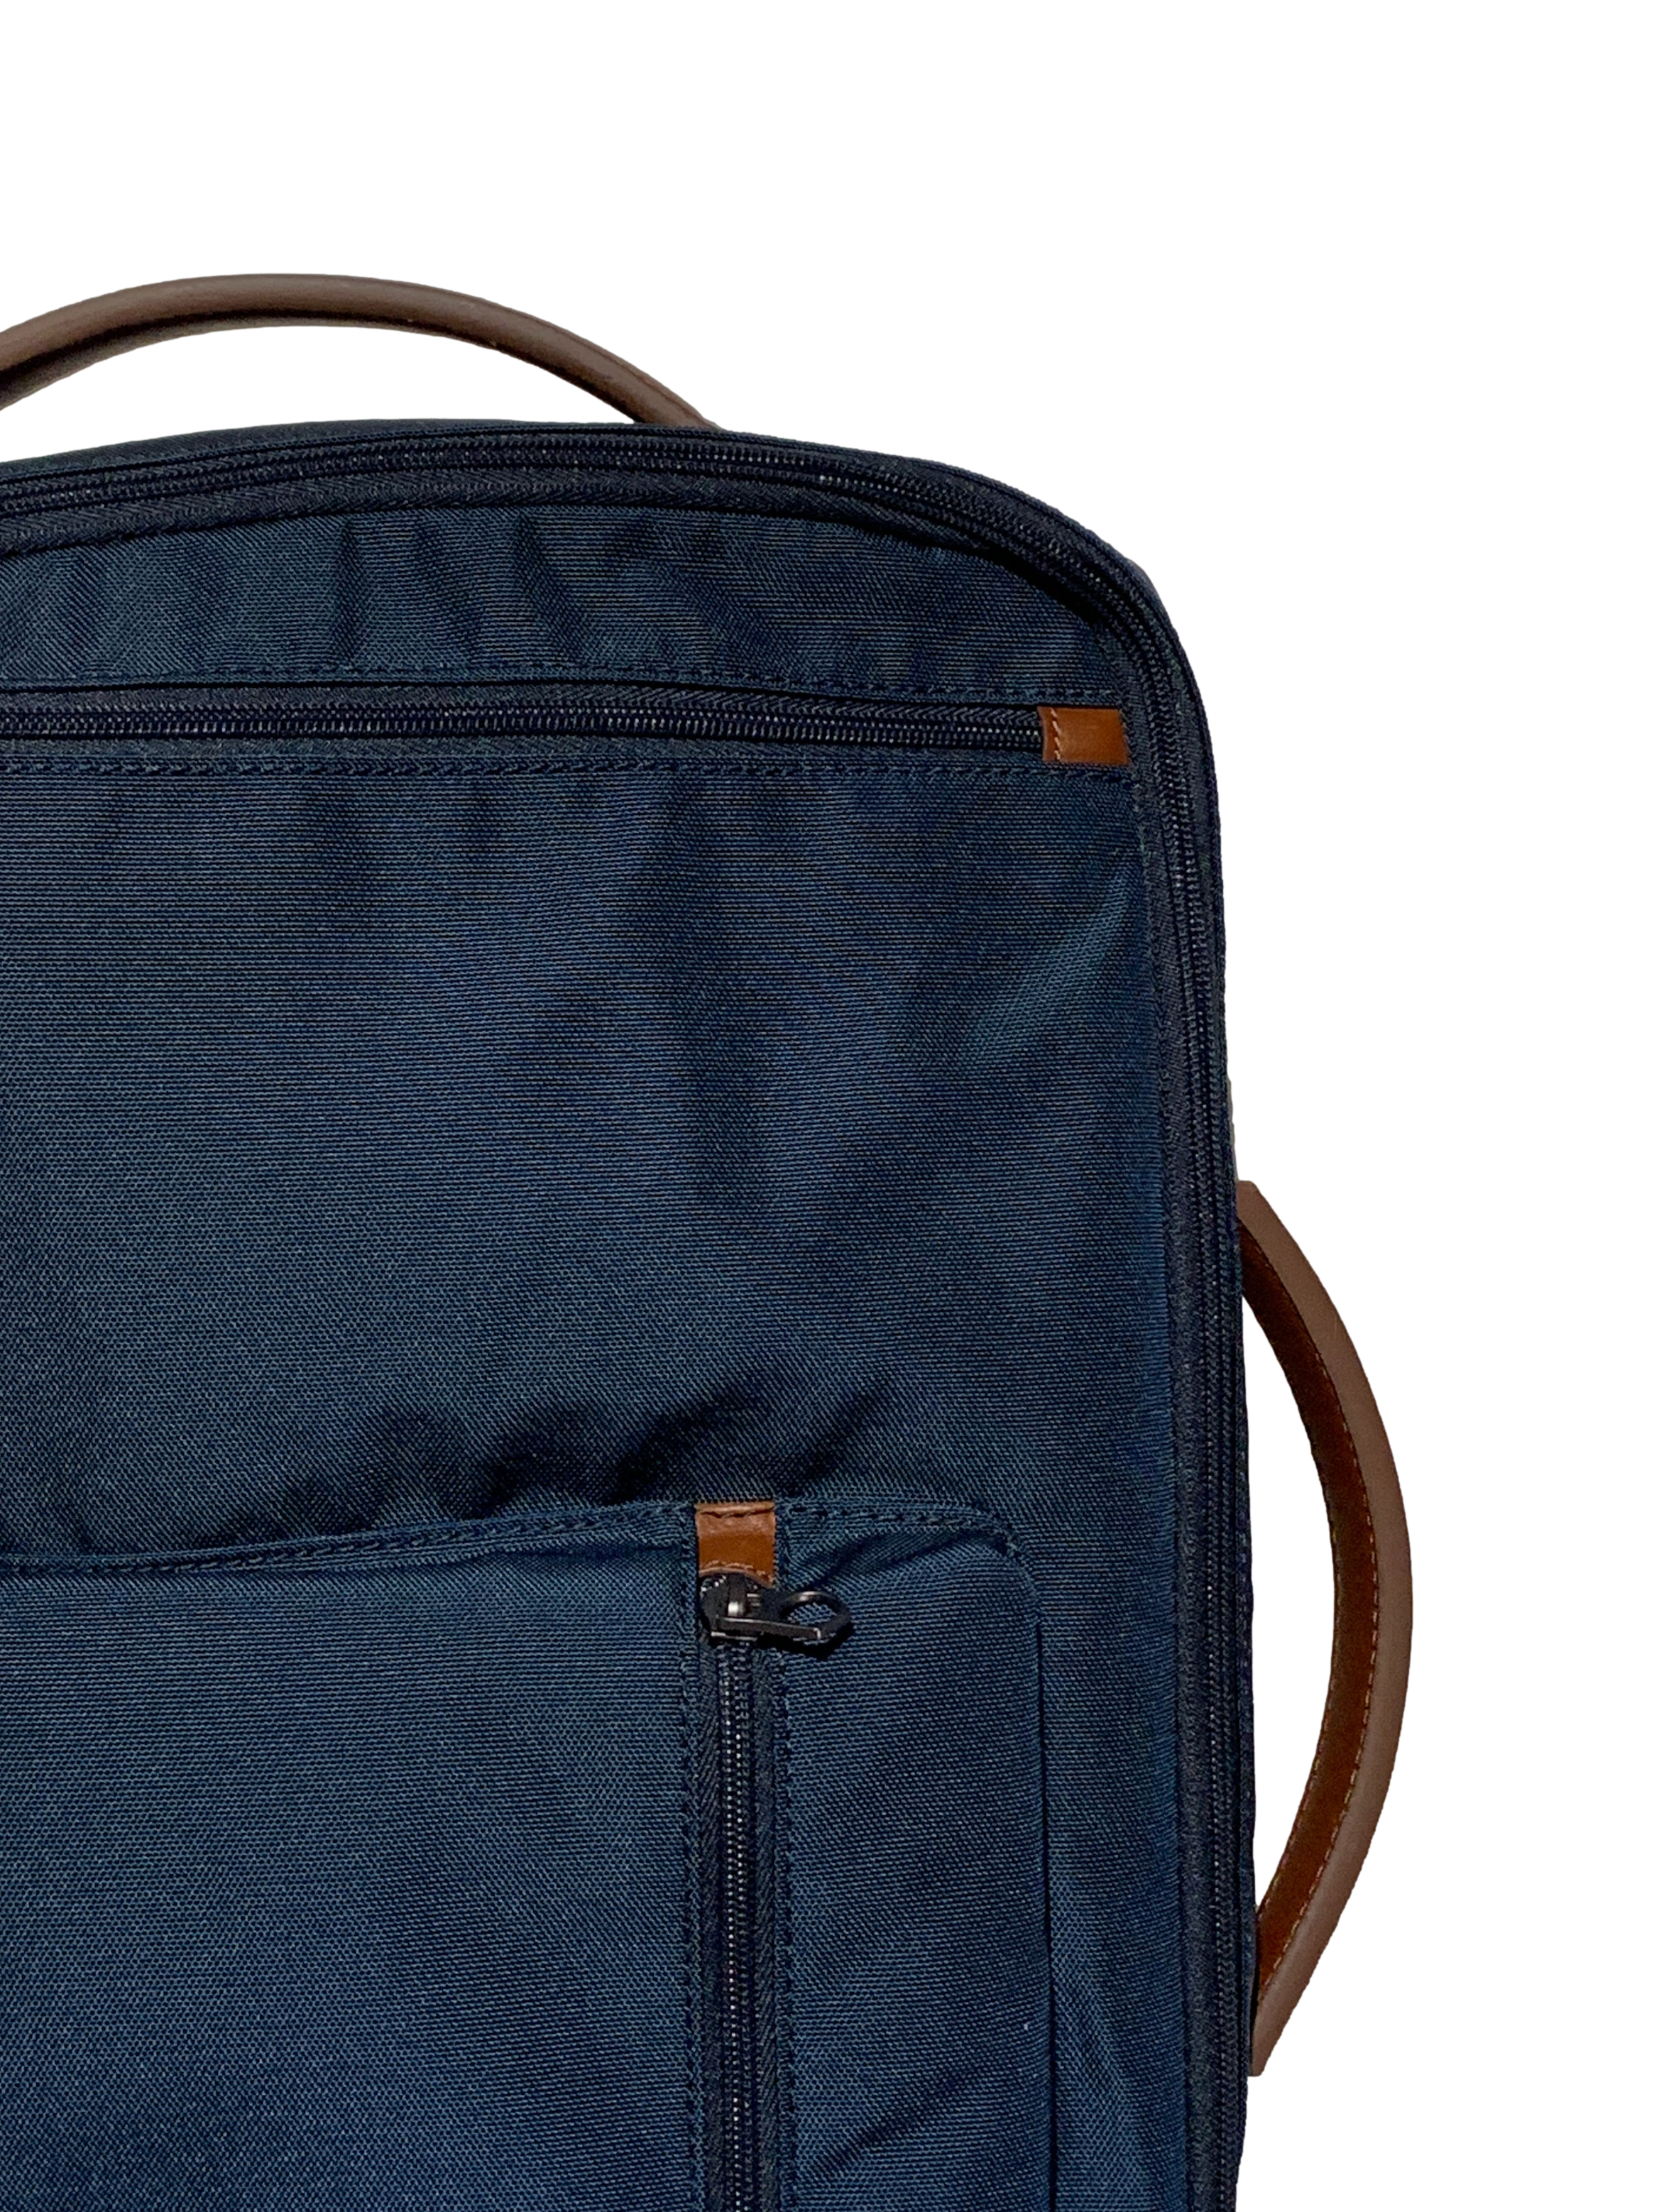 Navy Blue Brown Multipurpose Backpack